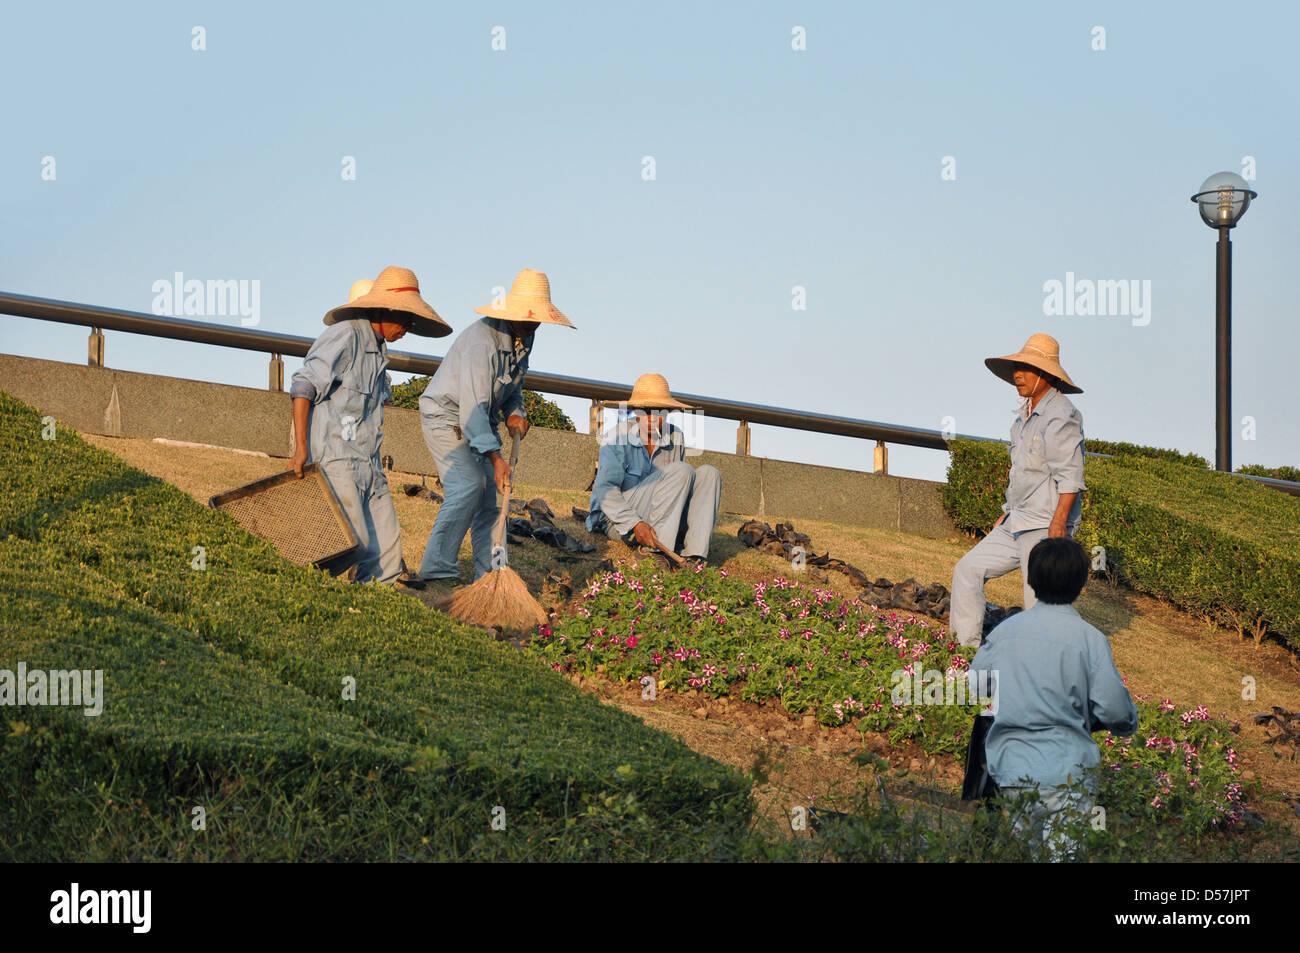 Chinesische Gärtner bei der Arbeit in einem öffentlichen Park - Shanghai, China Stockfoto